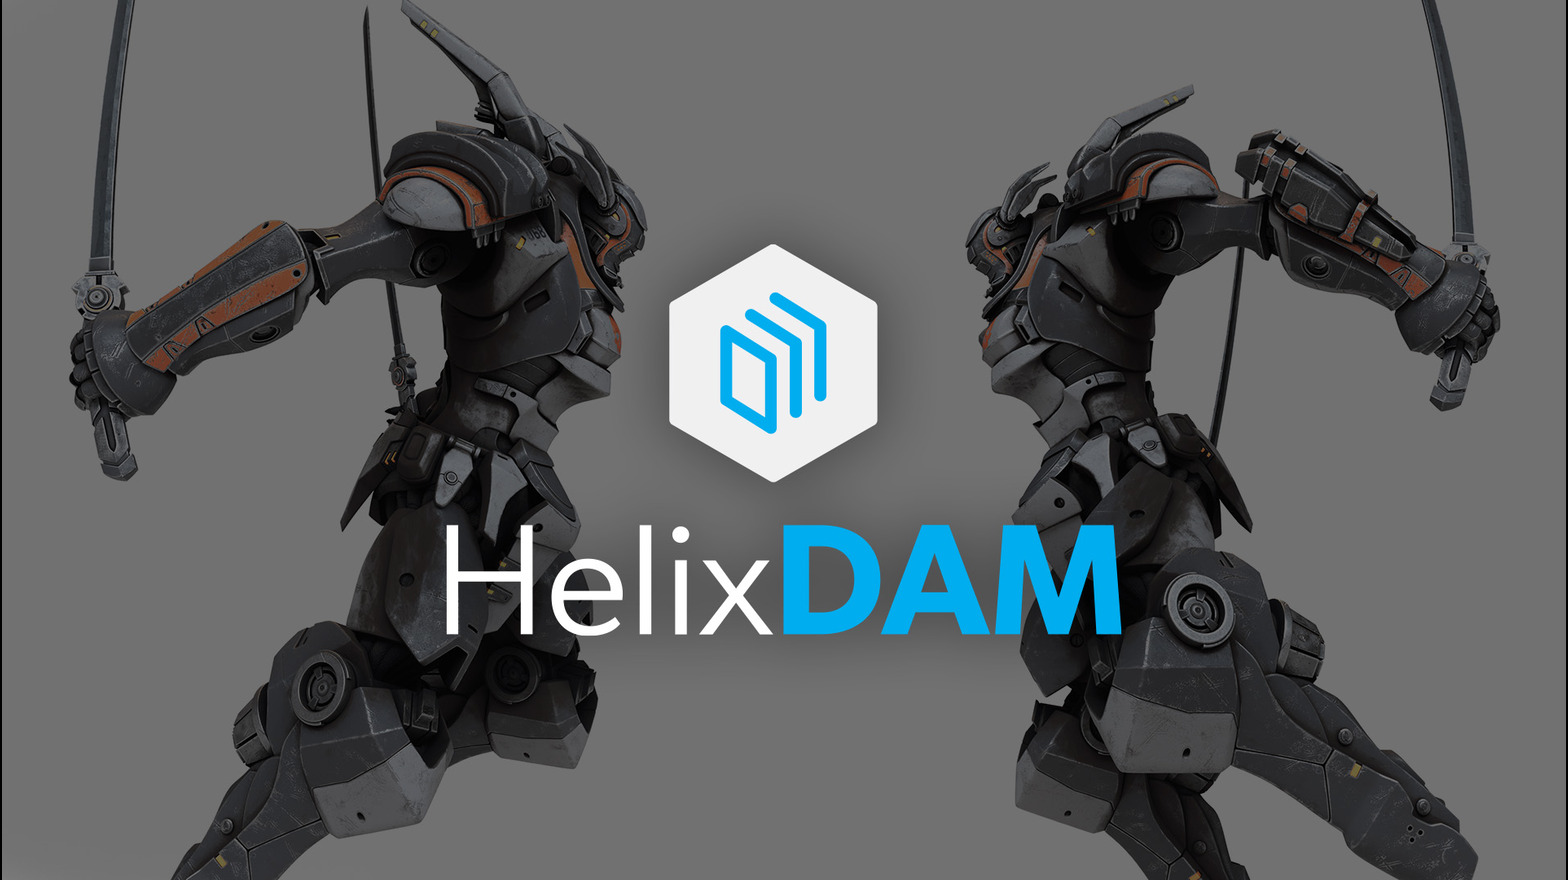 Helix DAM Hero image